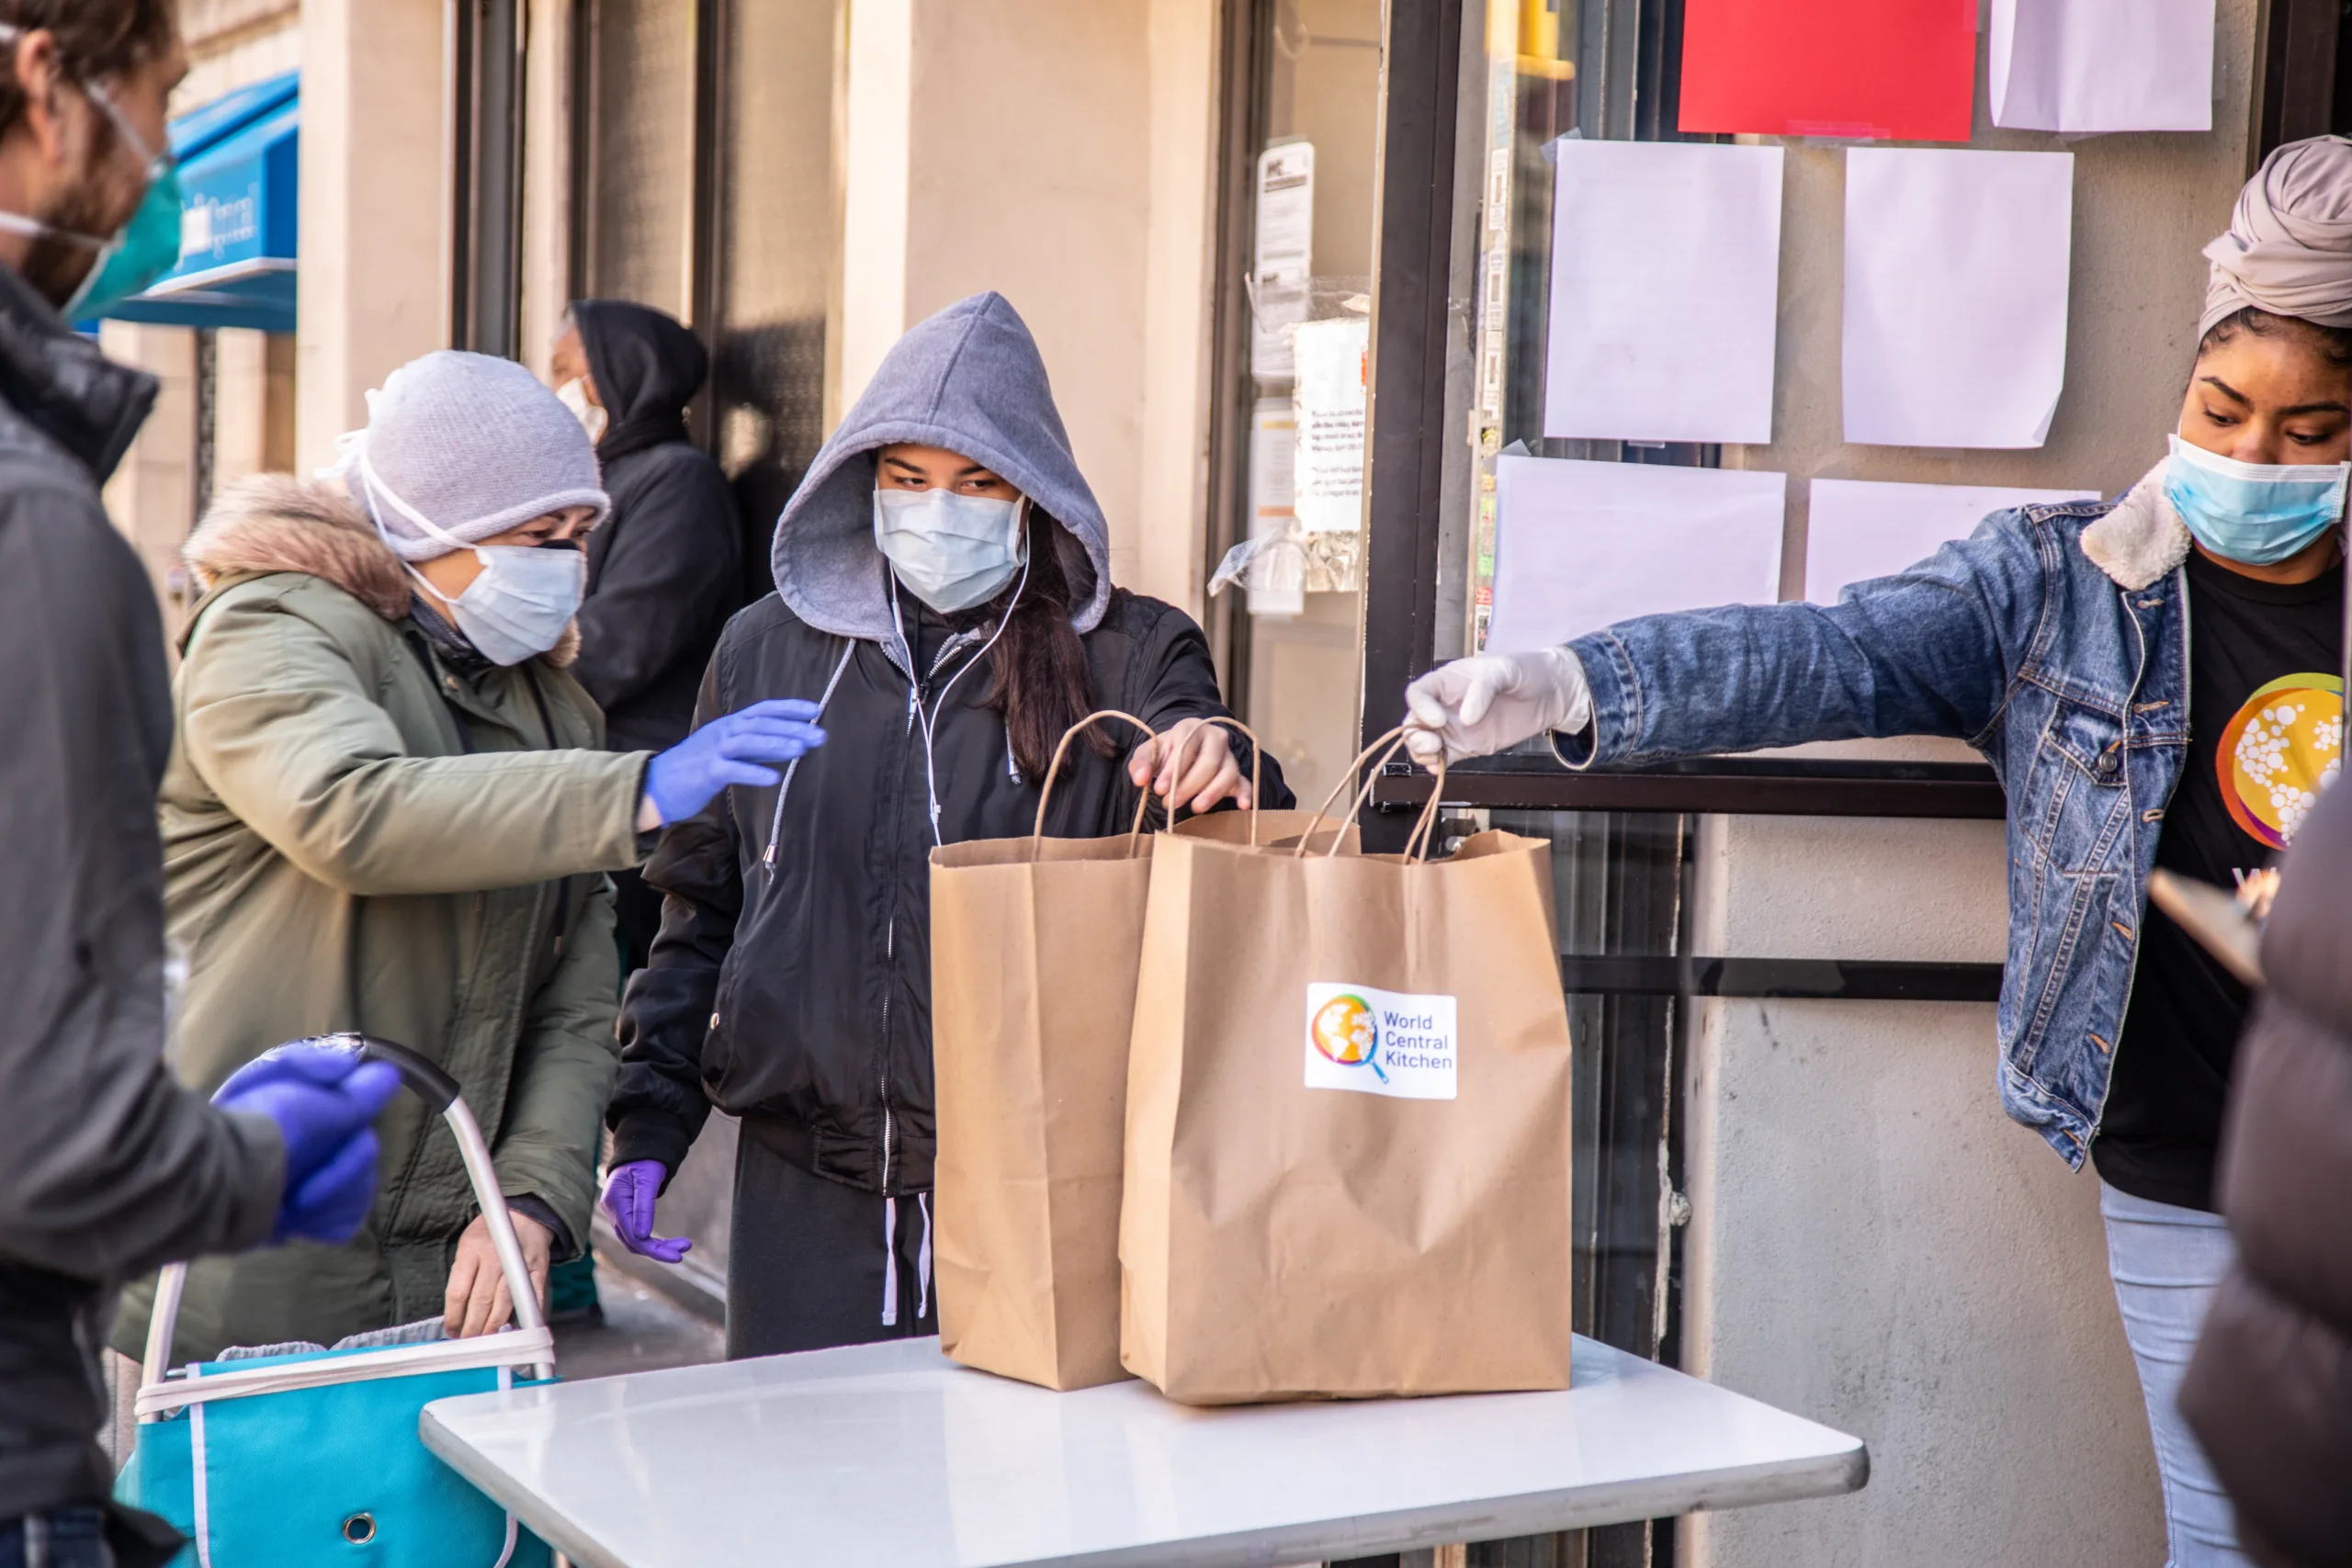 Two volunteers distribute emergency goods in New York City.